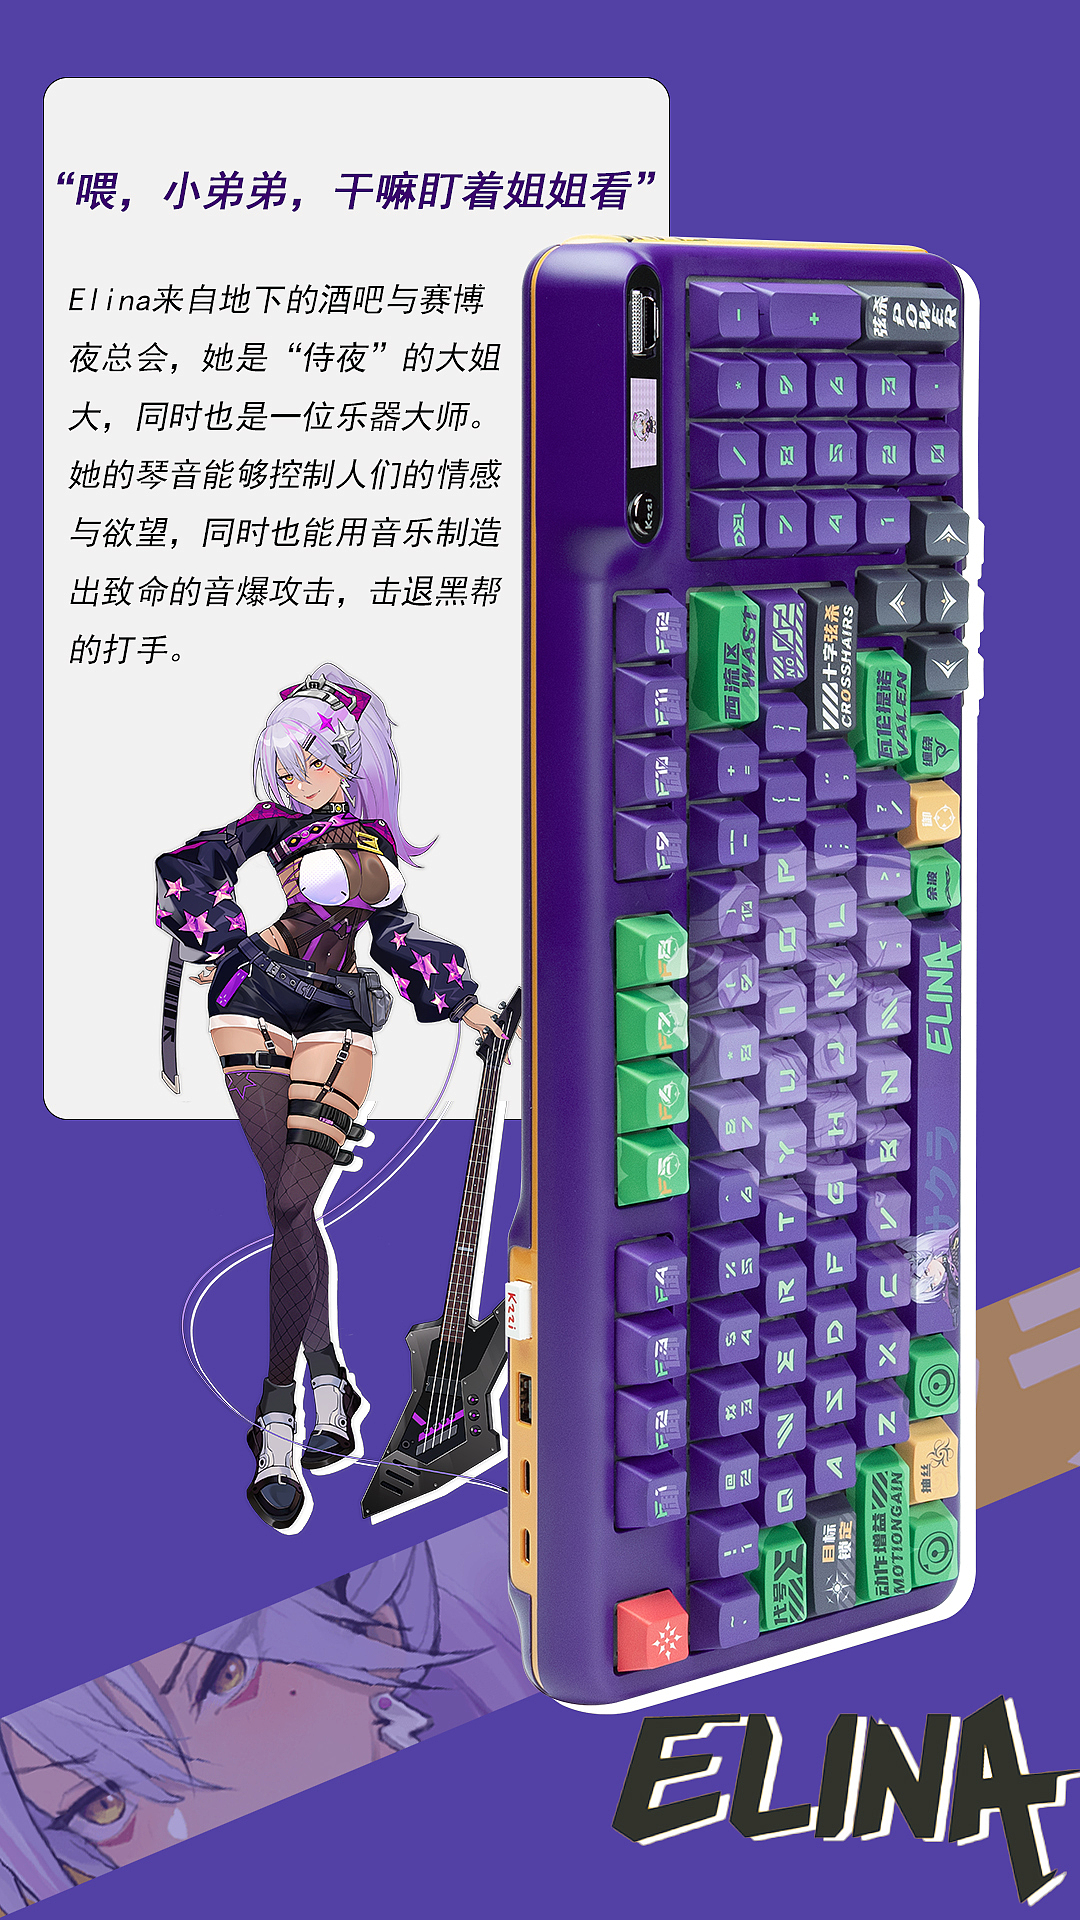 机械键盘，二次元，上海产品设计公司，产品设计公司，工业设计公司，键盘，